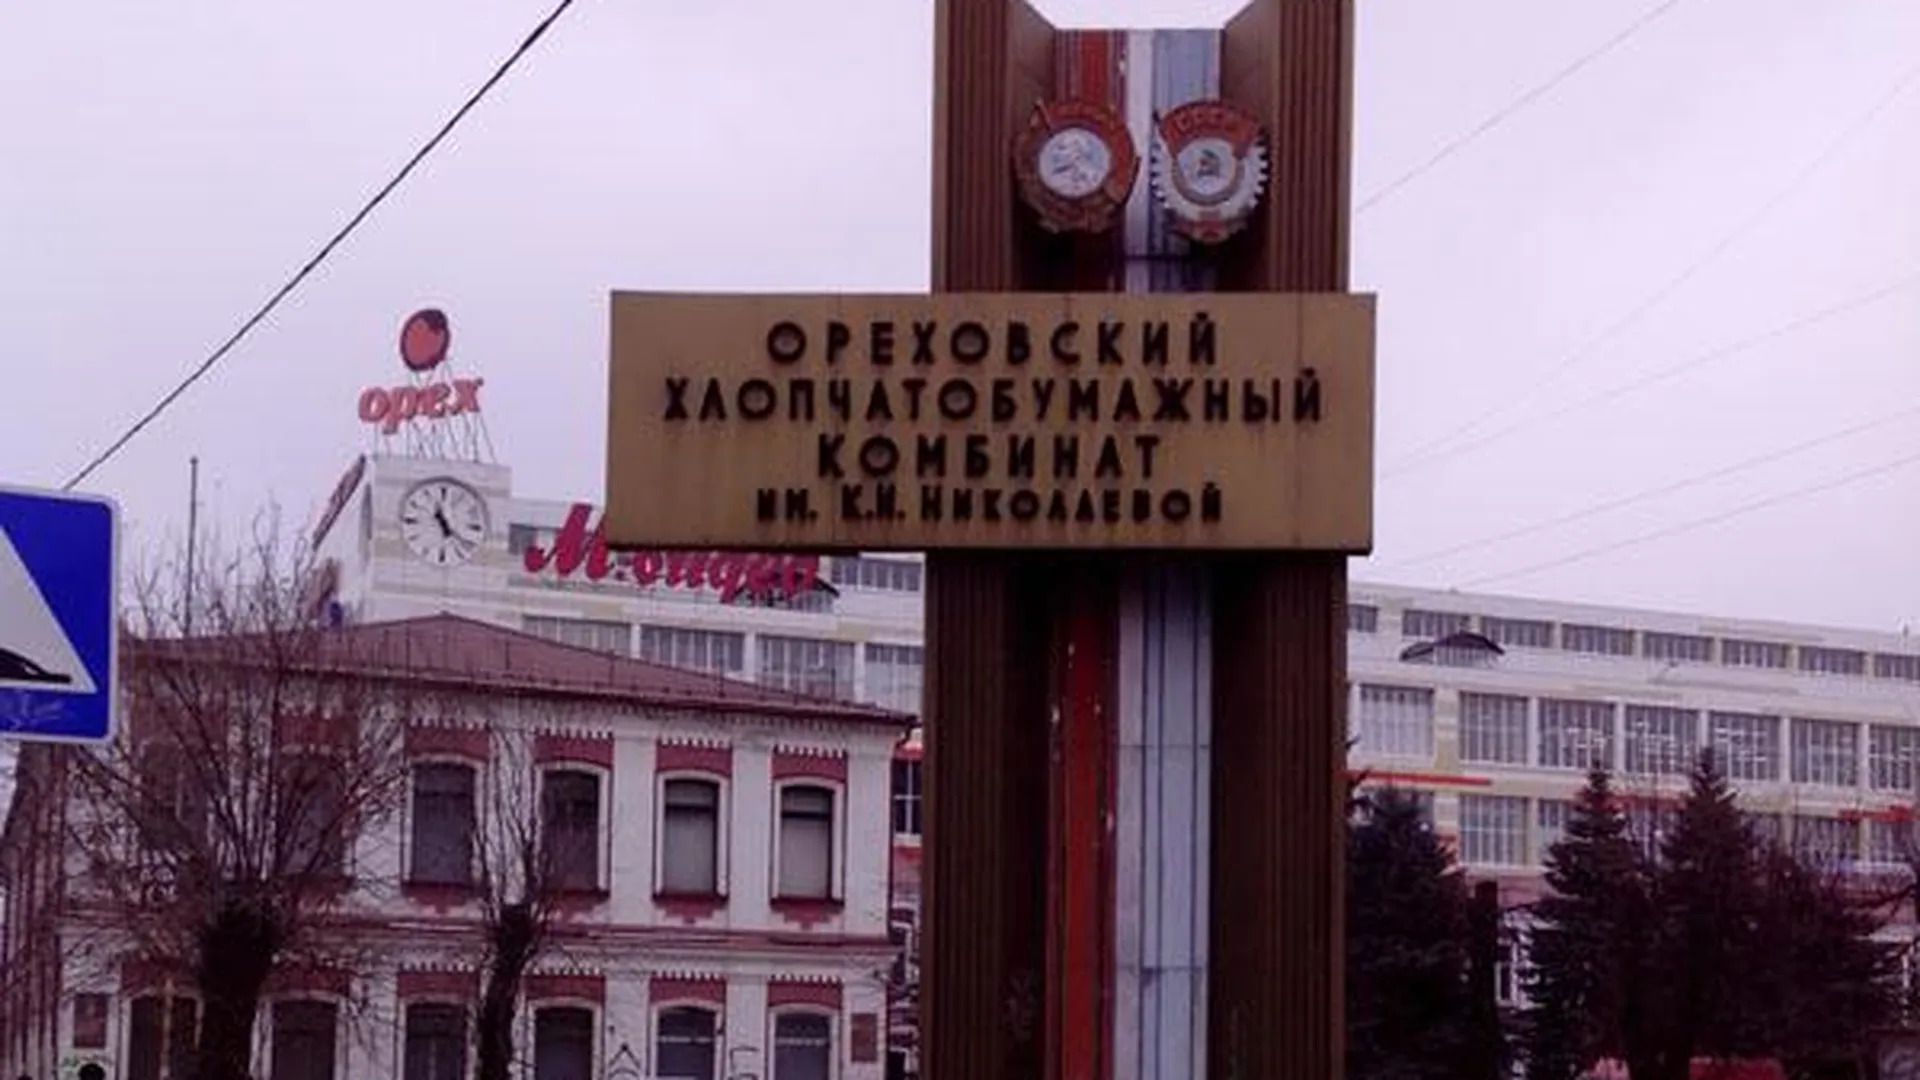 Ордена с одной из стел в Орехово-Зуеве оценили в 30 «сребреников»